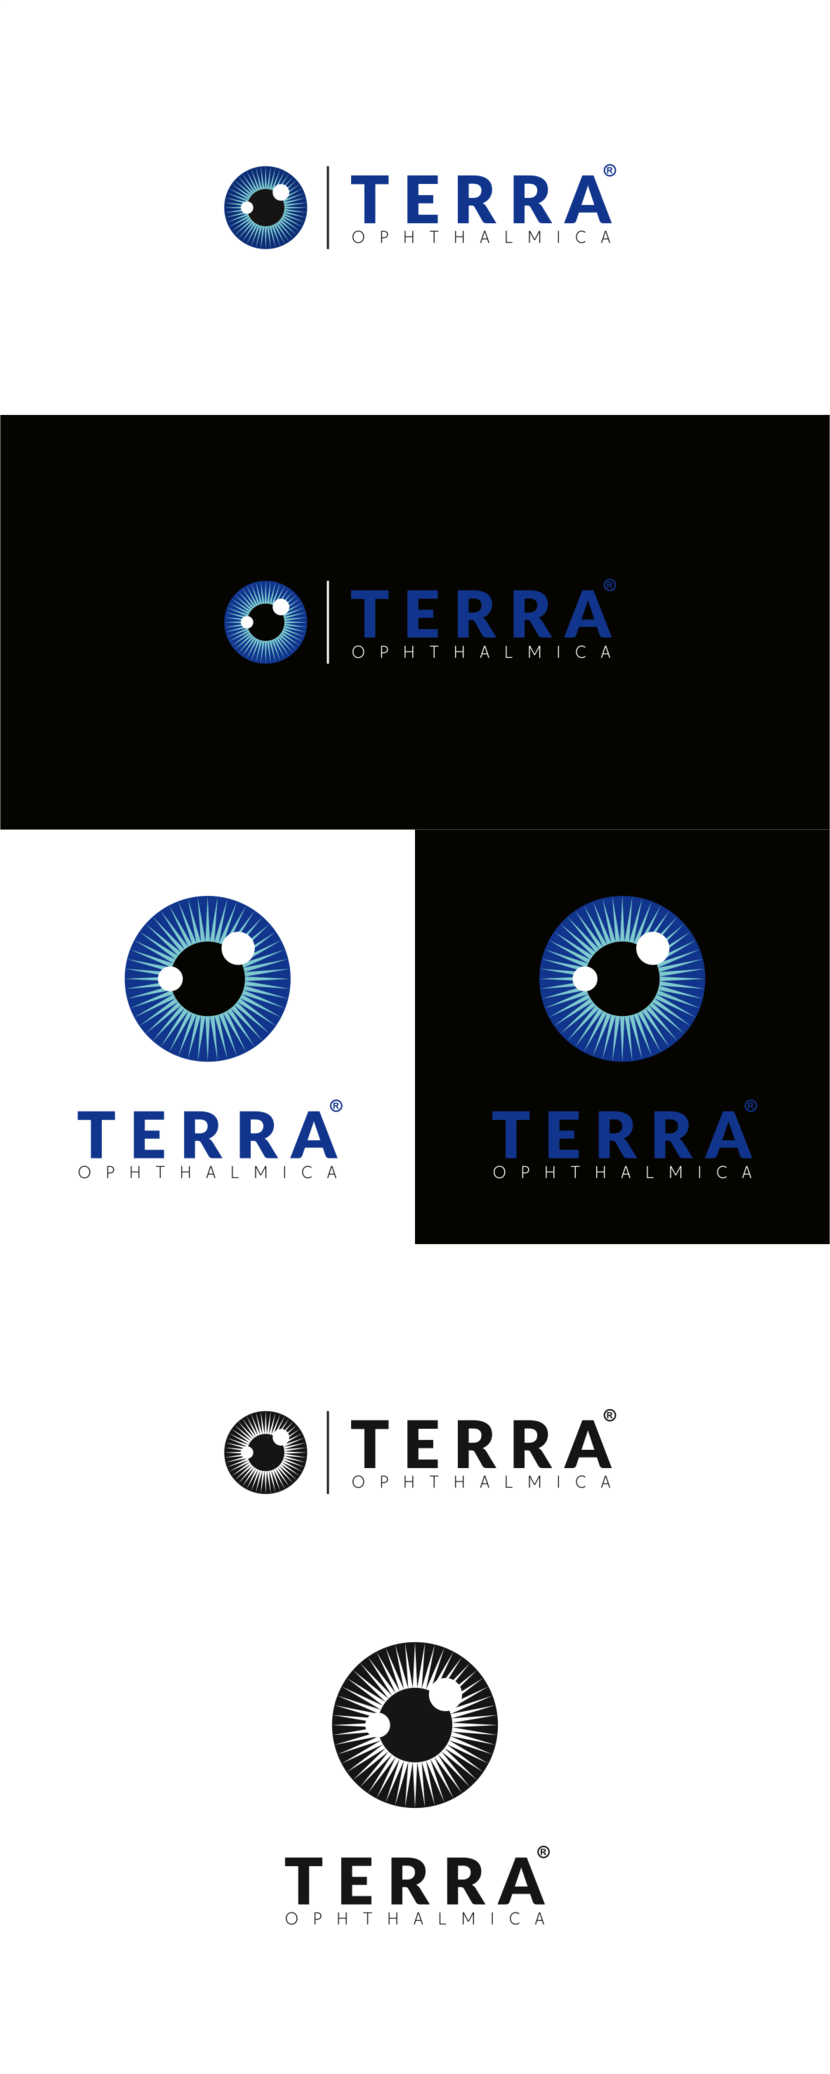 С удовольствием! Вариант с корректировками + ч/б))) - Логотип для офтальмологического сообщества "Терра-Офтальмика"